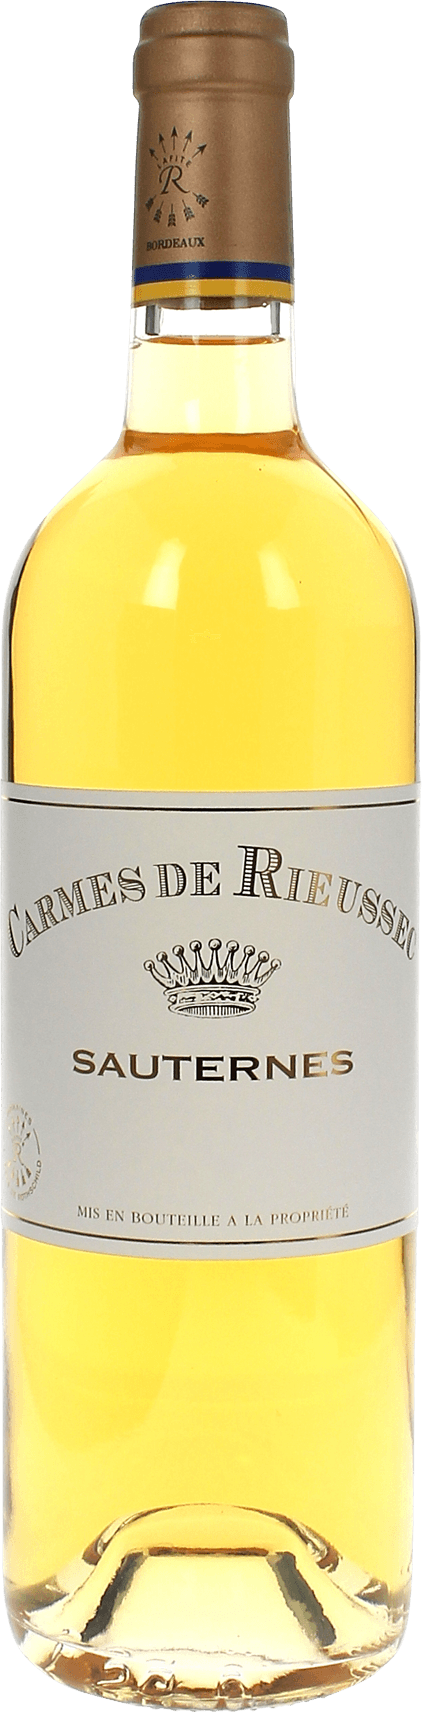 Carmes de rieussec 2018  Sauternes Barsac, Bordeaux blanc